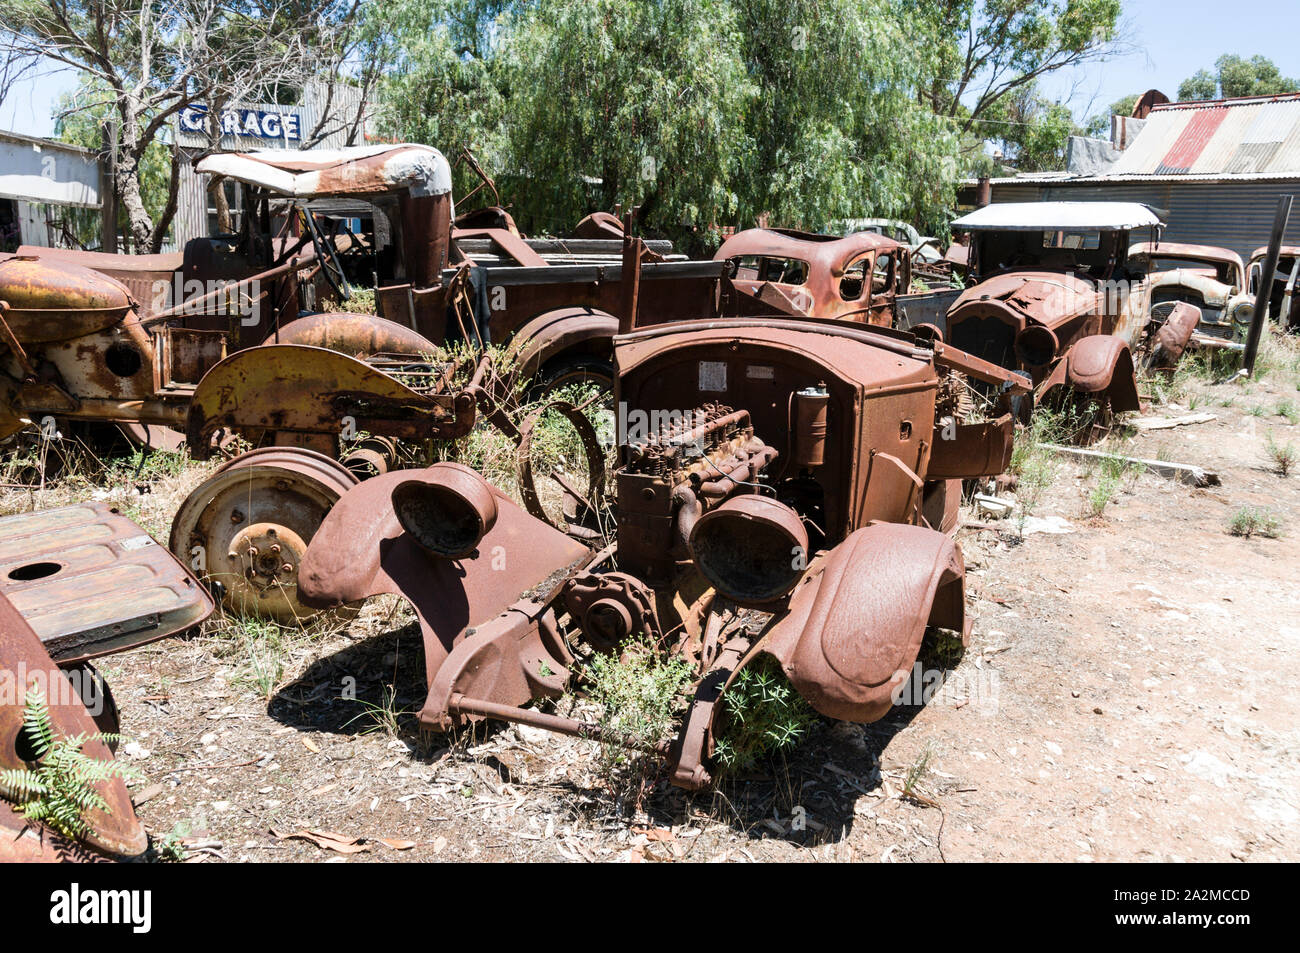 Alte Tailem Stadt Pioneer Village, Australiens größter Pioneer Village Museum. Zerstörte Fahrzeuge bereit für Schrott an einem Auto breakers Yard an der offenen Stockfoto